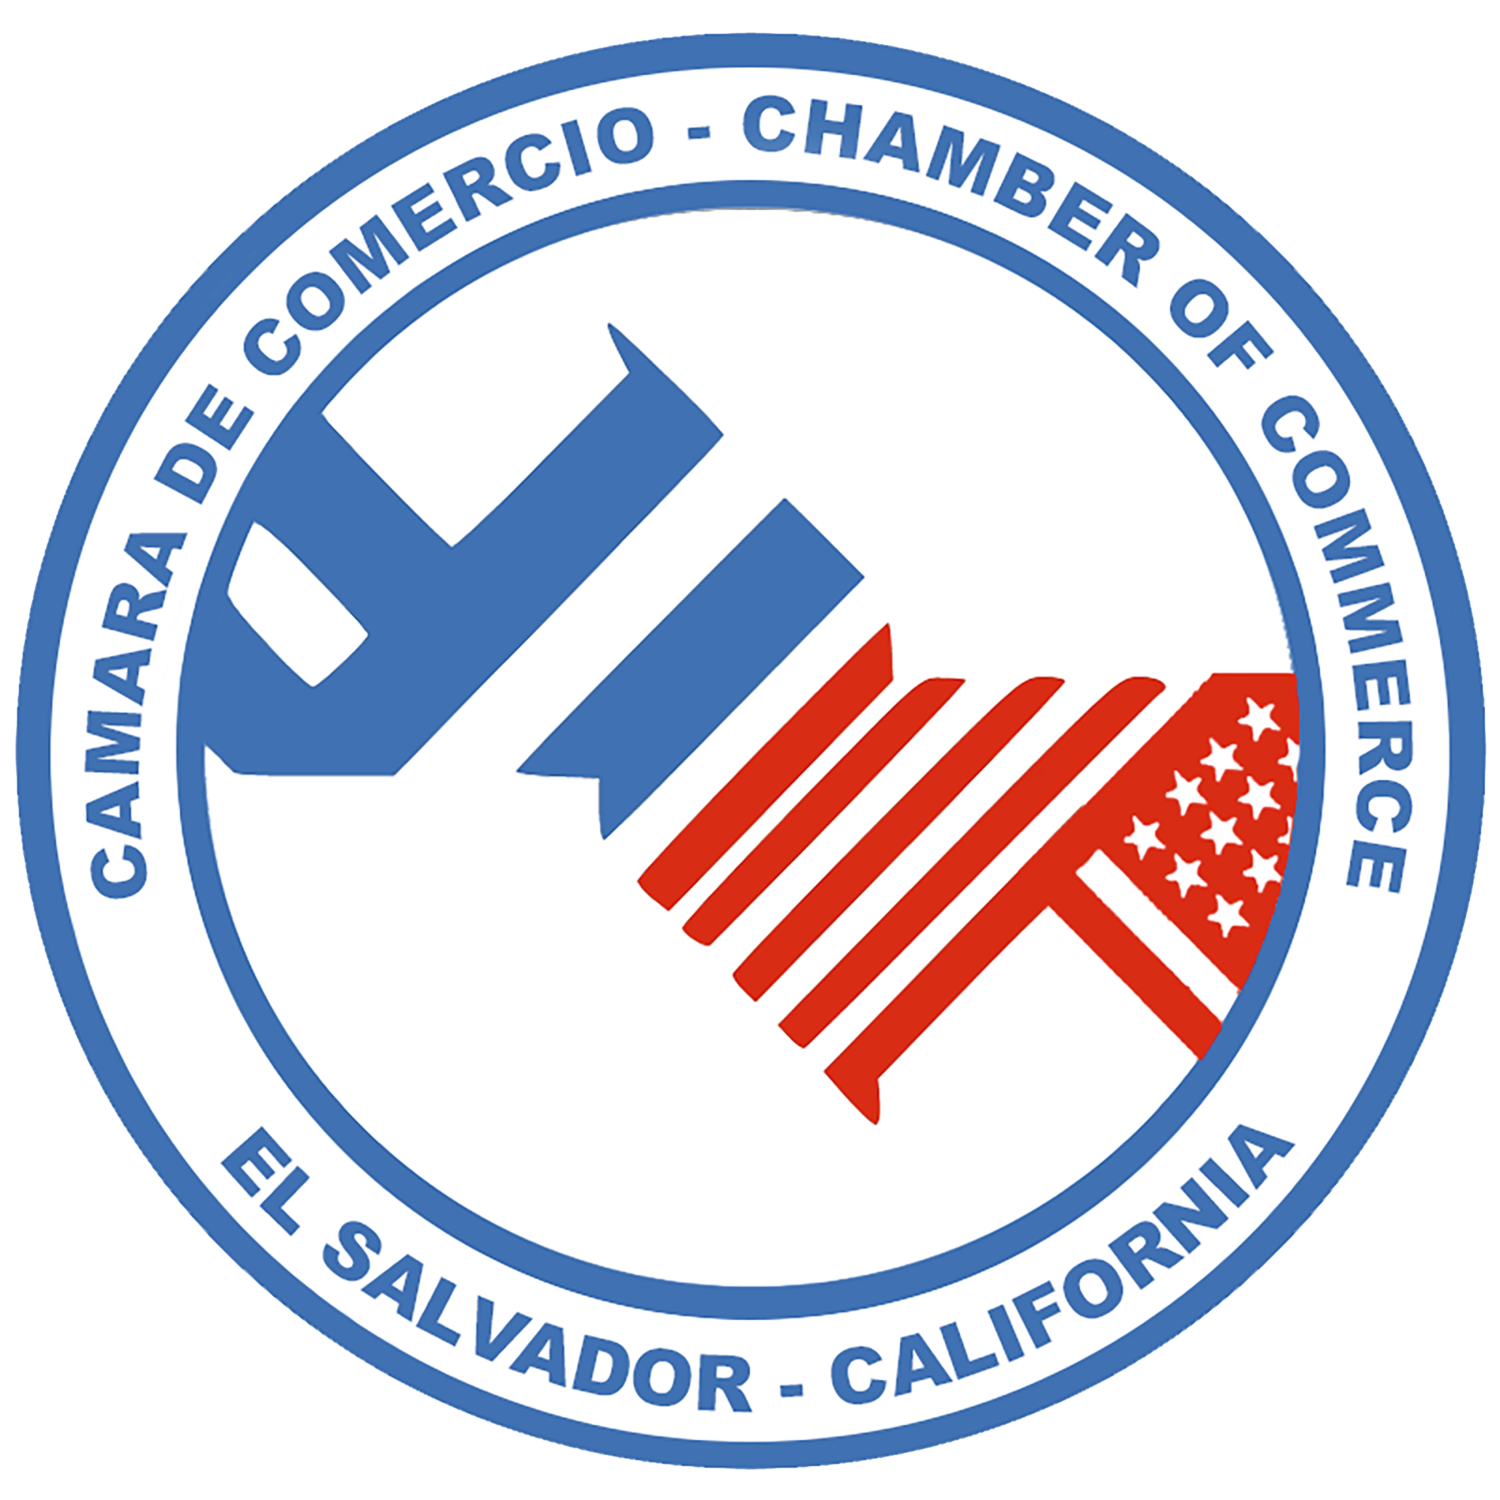 Camara de Comercio, El Salvador - California